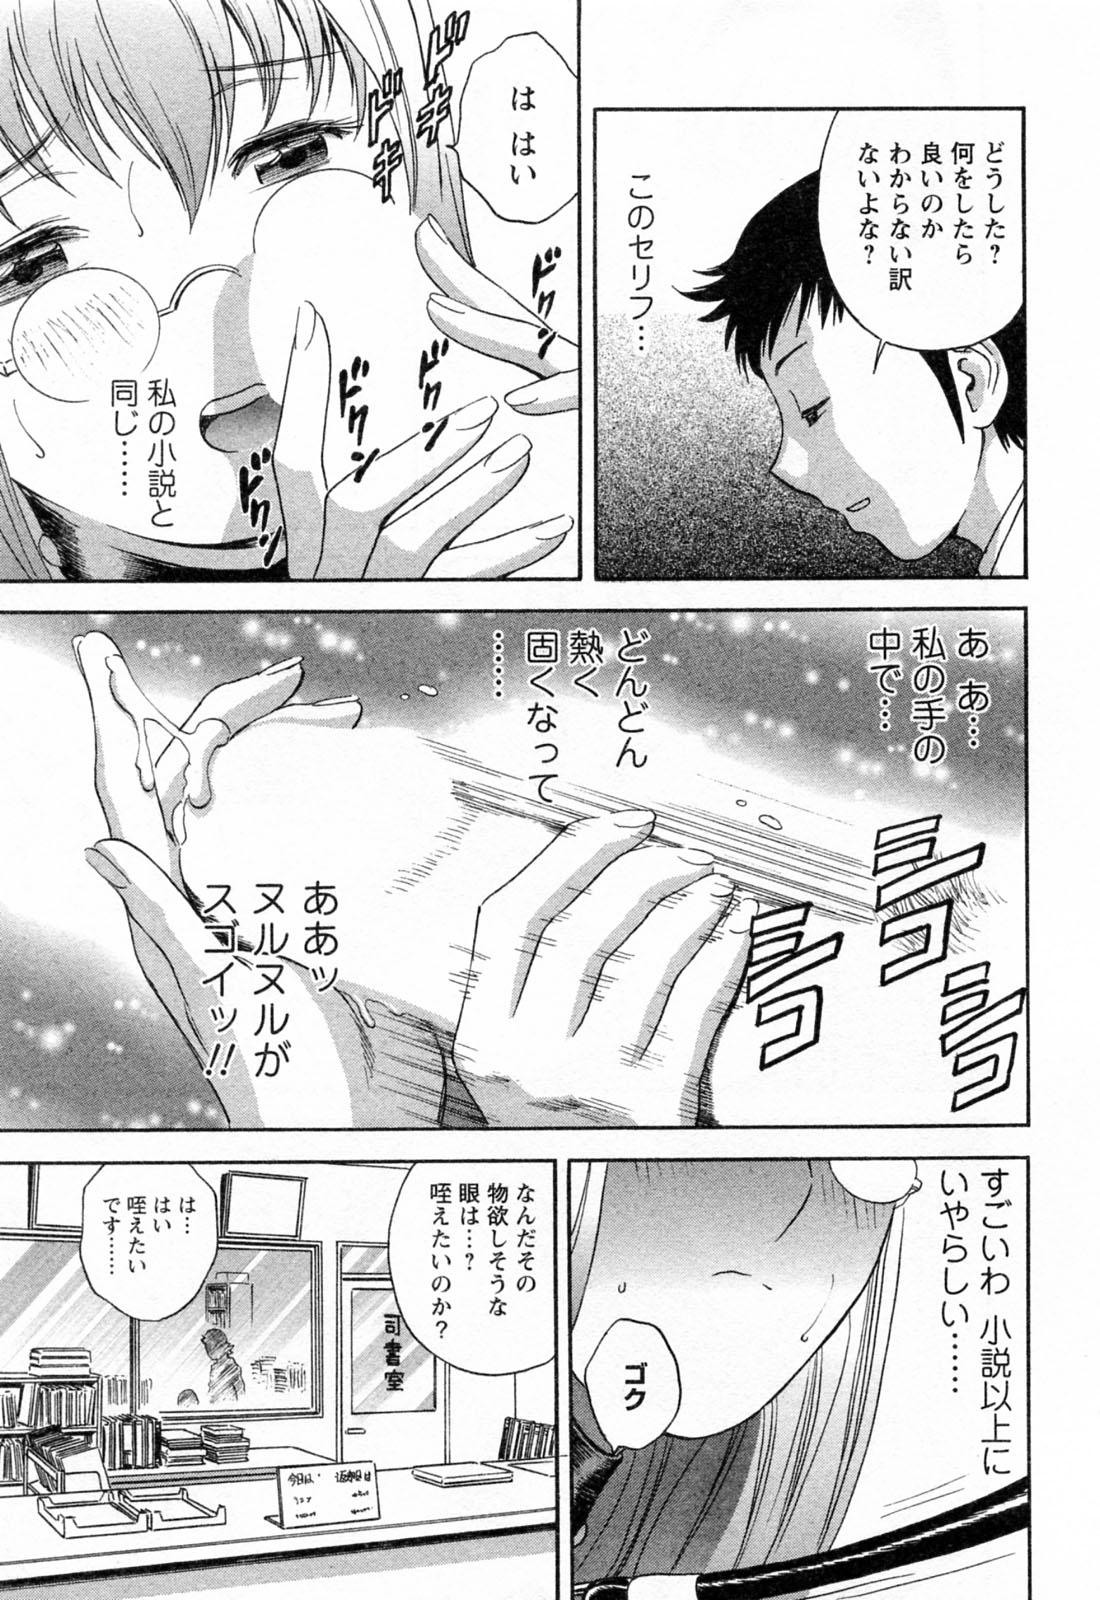 [Hidemaru] Mo-Retsu! Boin Sensei (Boing Boing Teacher) Vol.4 20